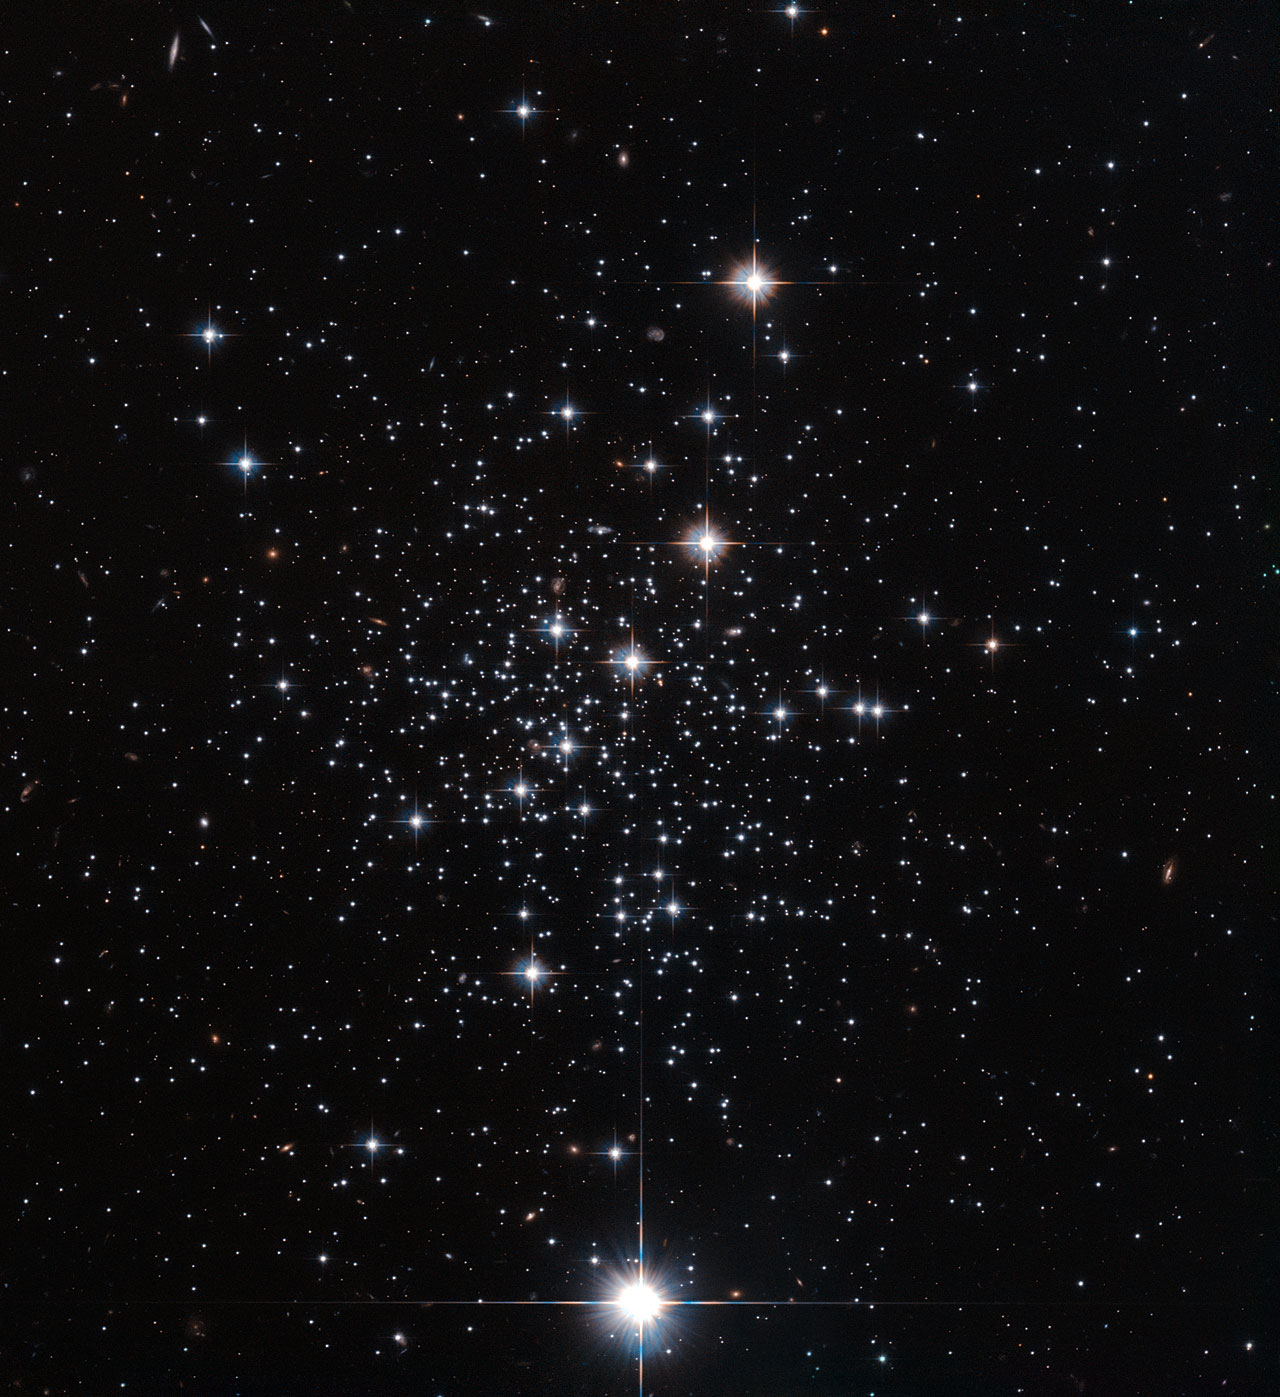 Хаббл сфотографировал звездное скопление Паломар 12